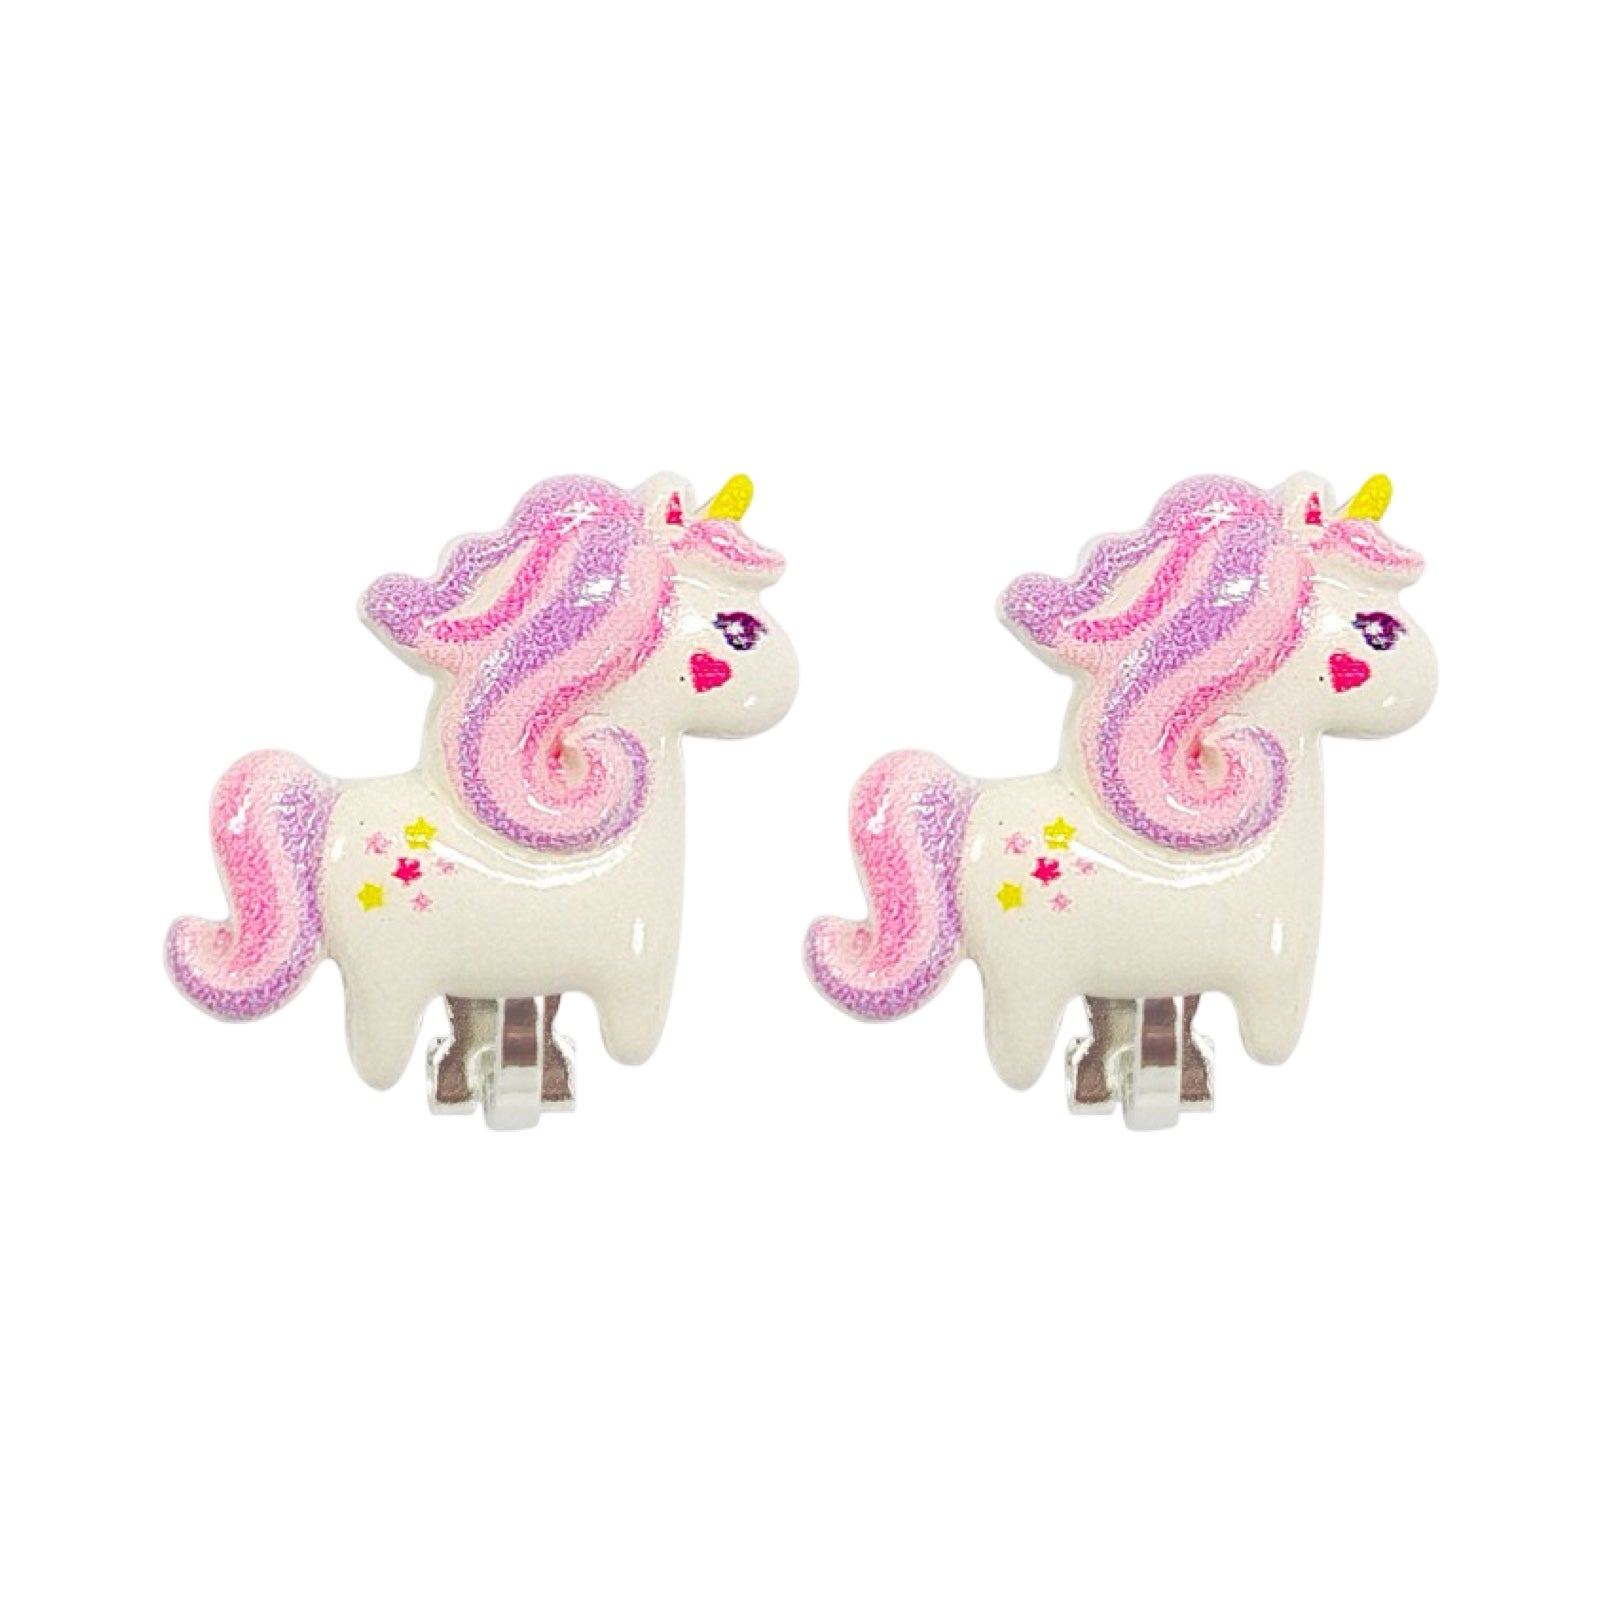 Clip earrings: Unicorn purple/pink